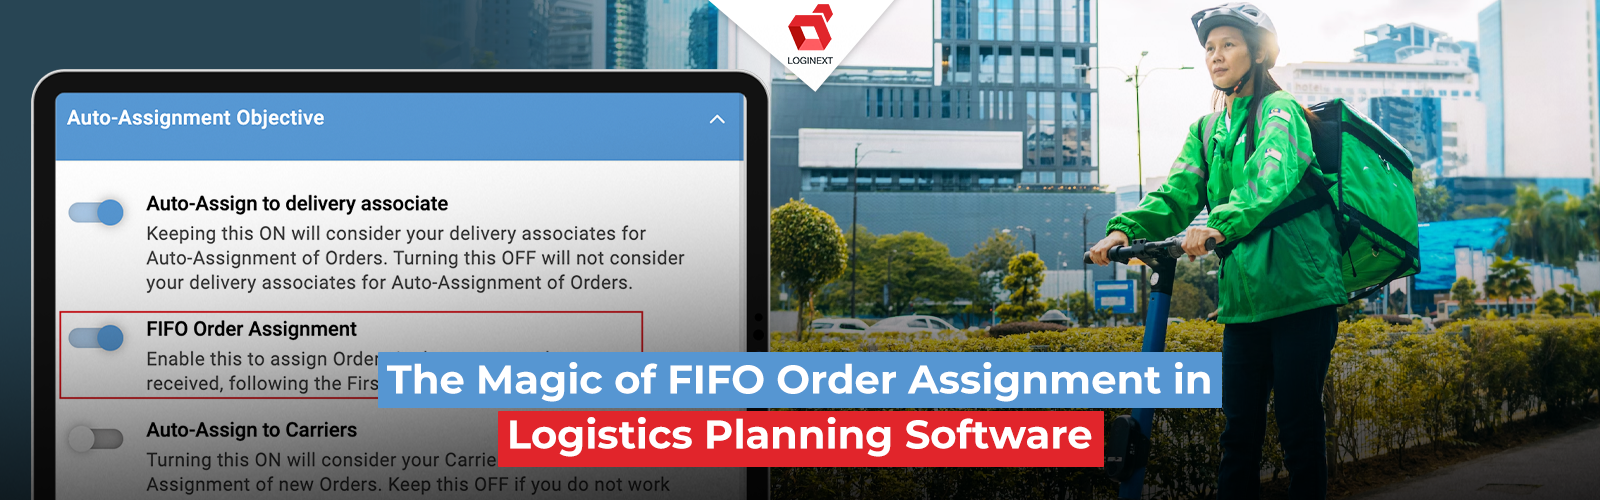 Magien ved FIFO-ordretildeling i logistikplanlægningssoftware